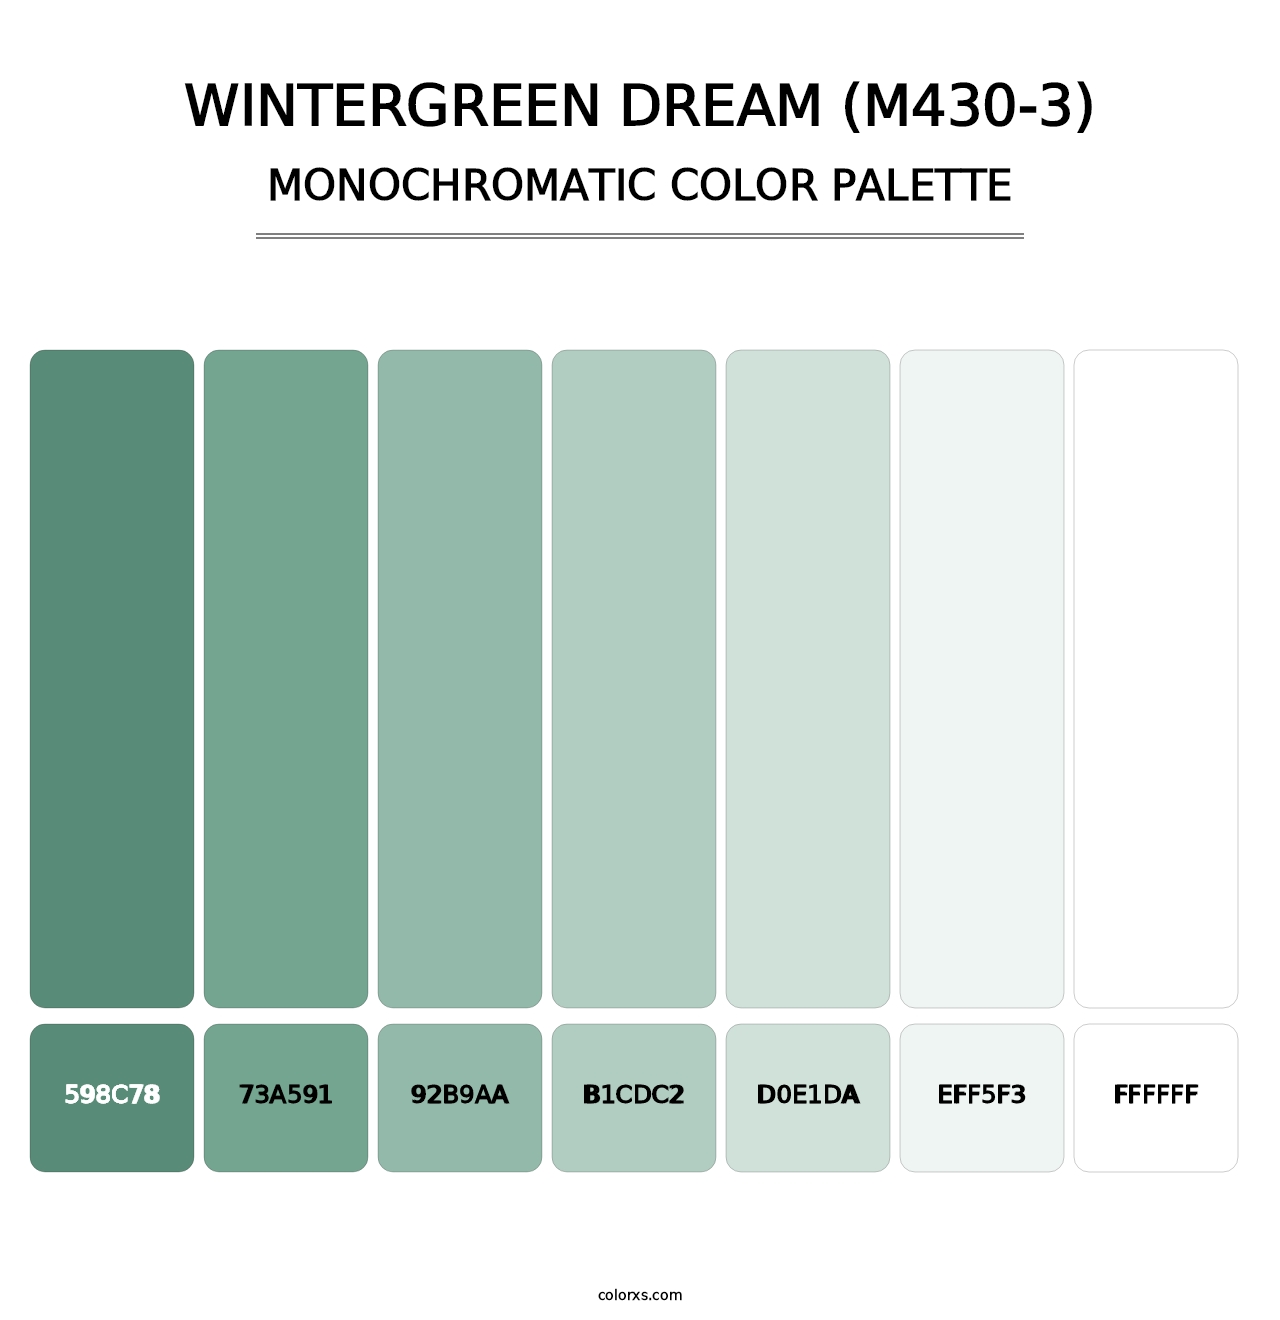 Wintergreen Dream (M430-3) - Monochromatic Color Palette